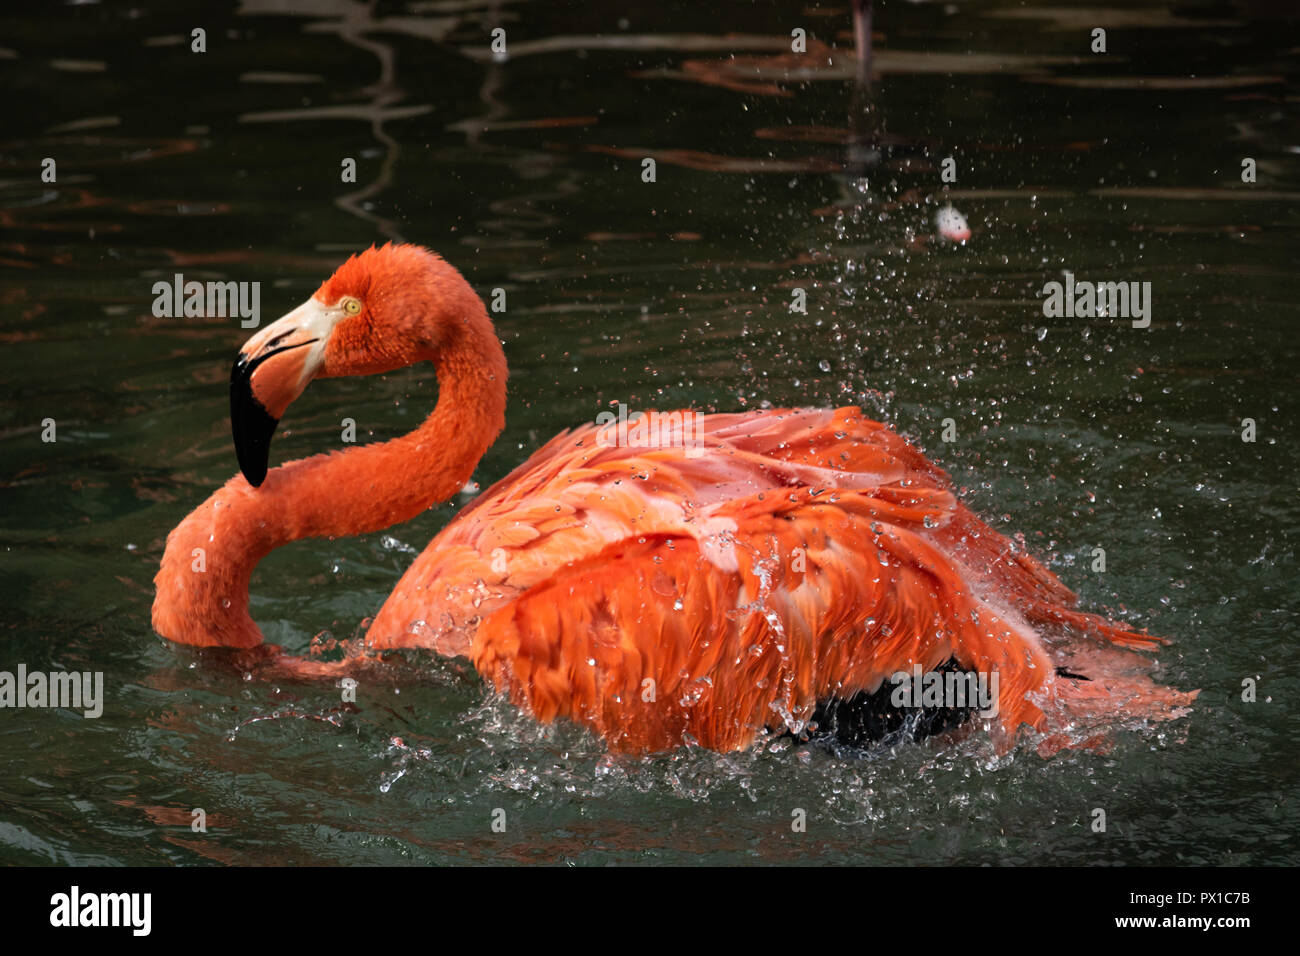 Single Nahaufnahme von einem farbenfrohen Flamingo schütteln Federn in einem Splash von Wassertropfen in einem Teich Stockfoto